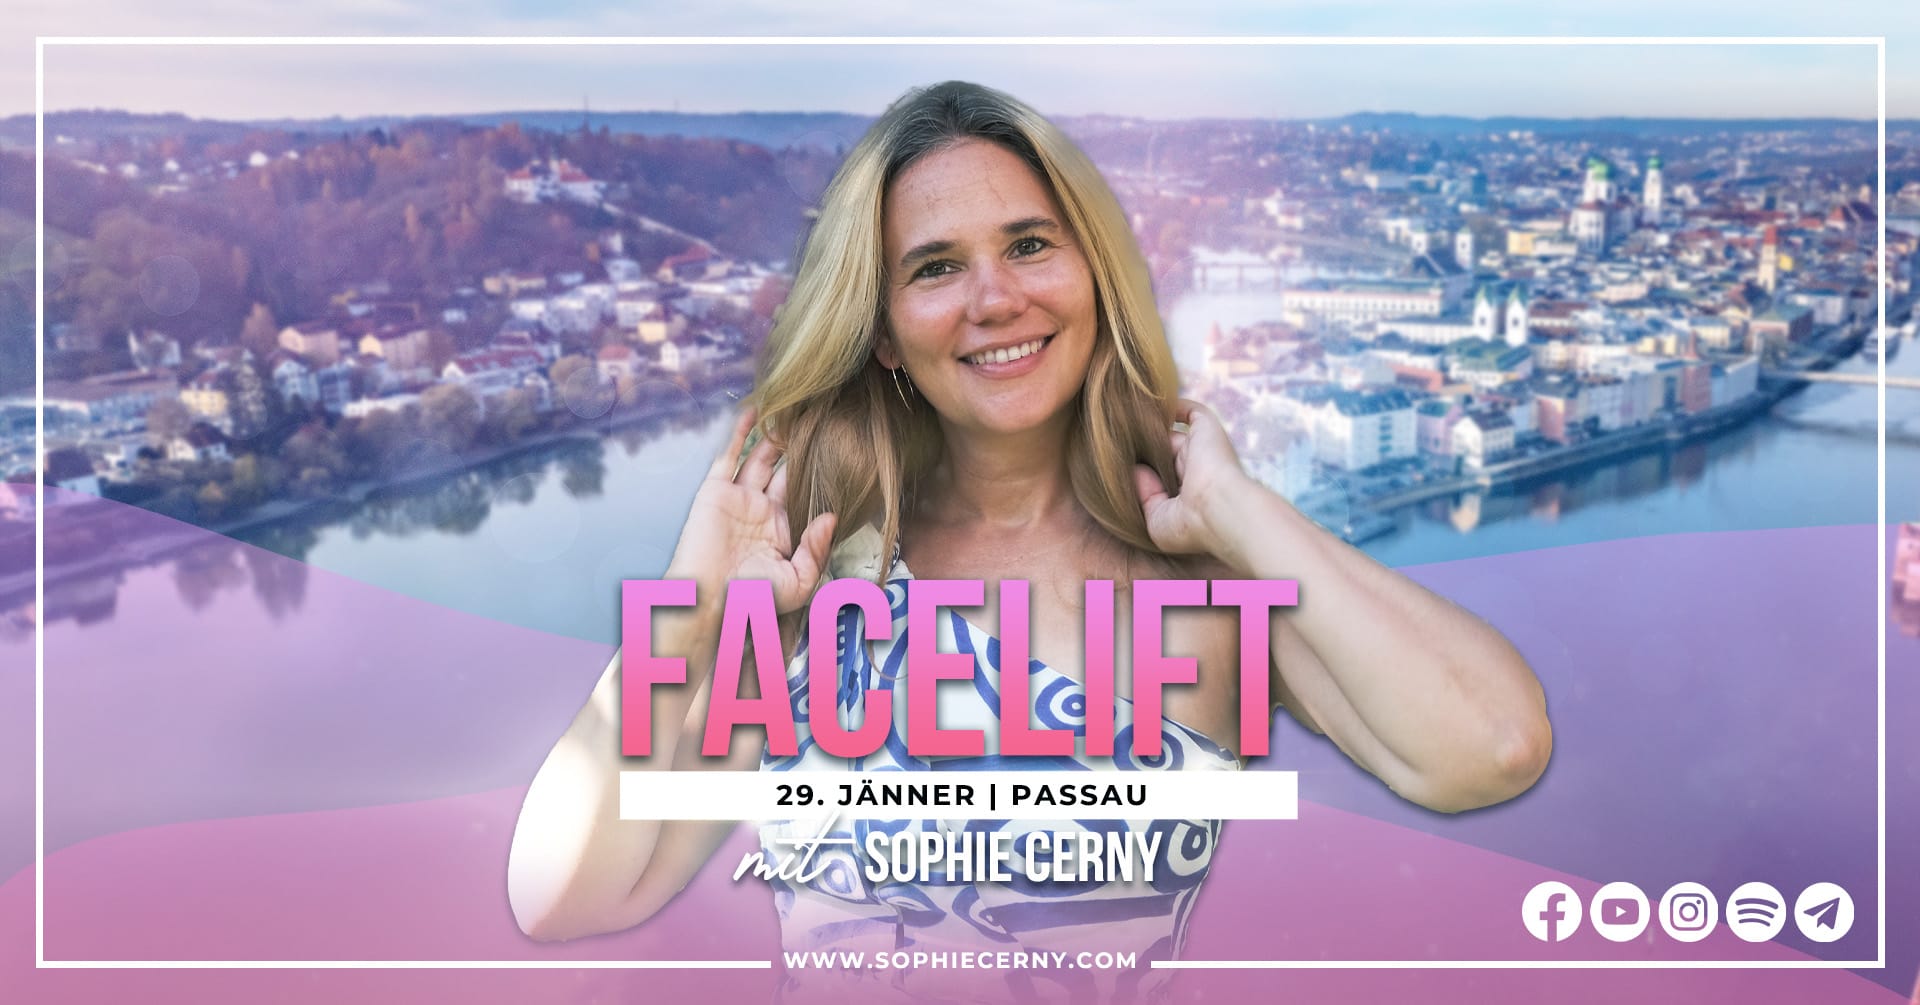 Access Facelift Sophie Cerny Passau